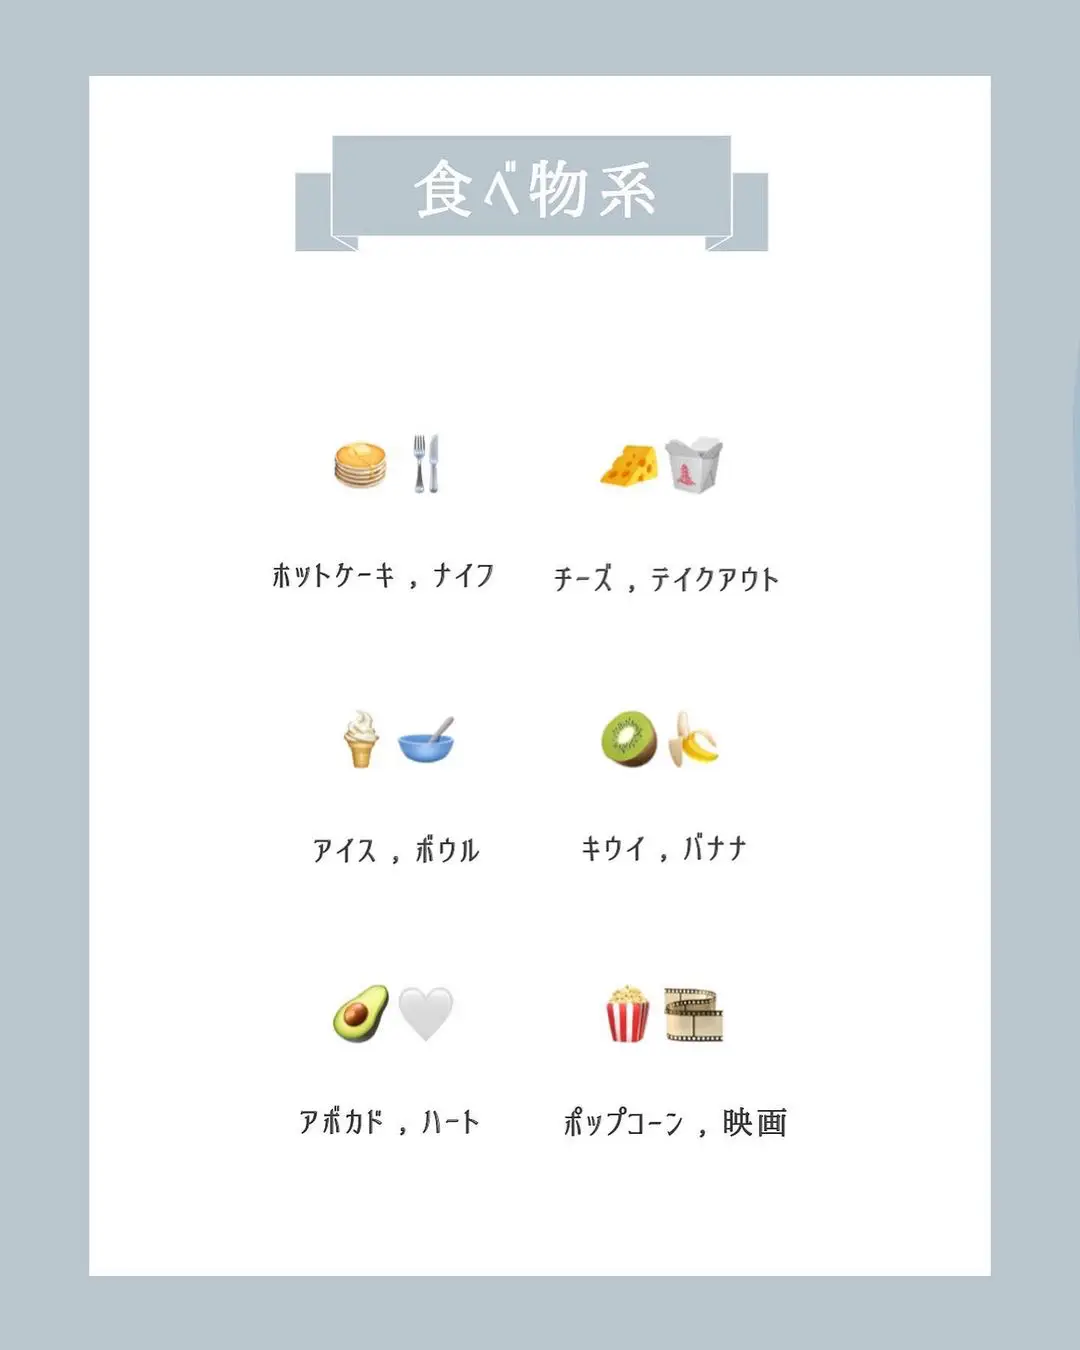 Iphoneの可愛い絵文字の組み合わせ Nemnが投稿したフォトブック Lemon8